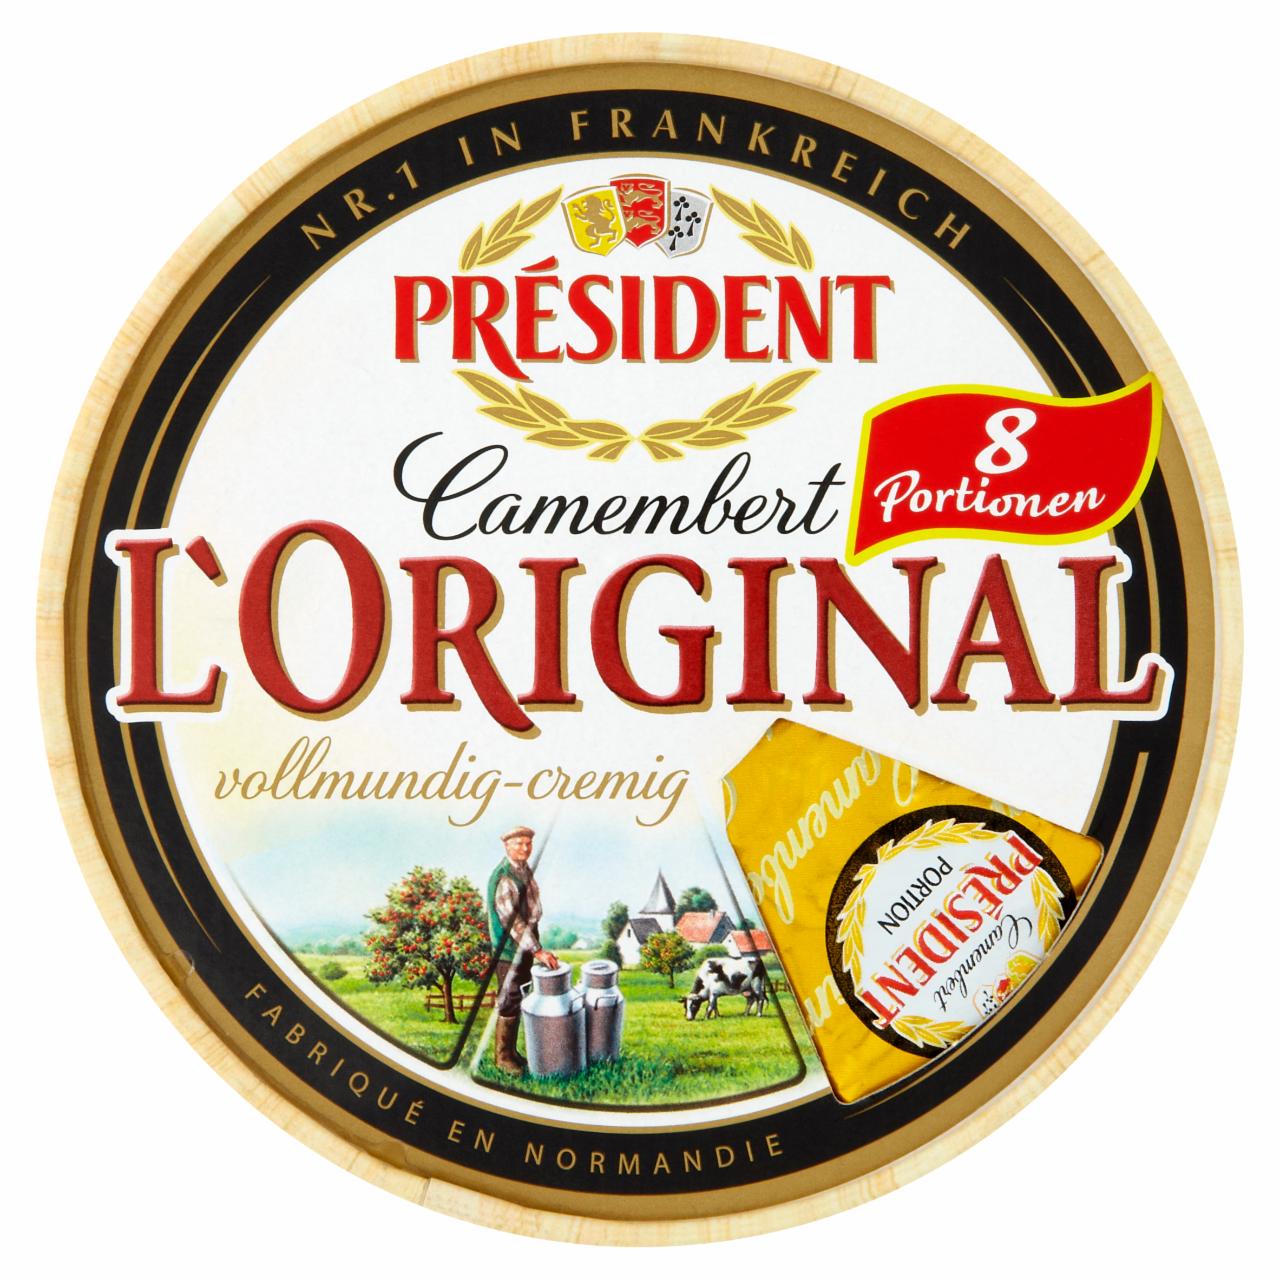 Képek - Président Camembert L'Original fehér nemespenésszel érlelt zsíros lágy sajt 250 g